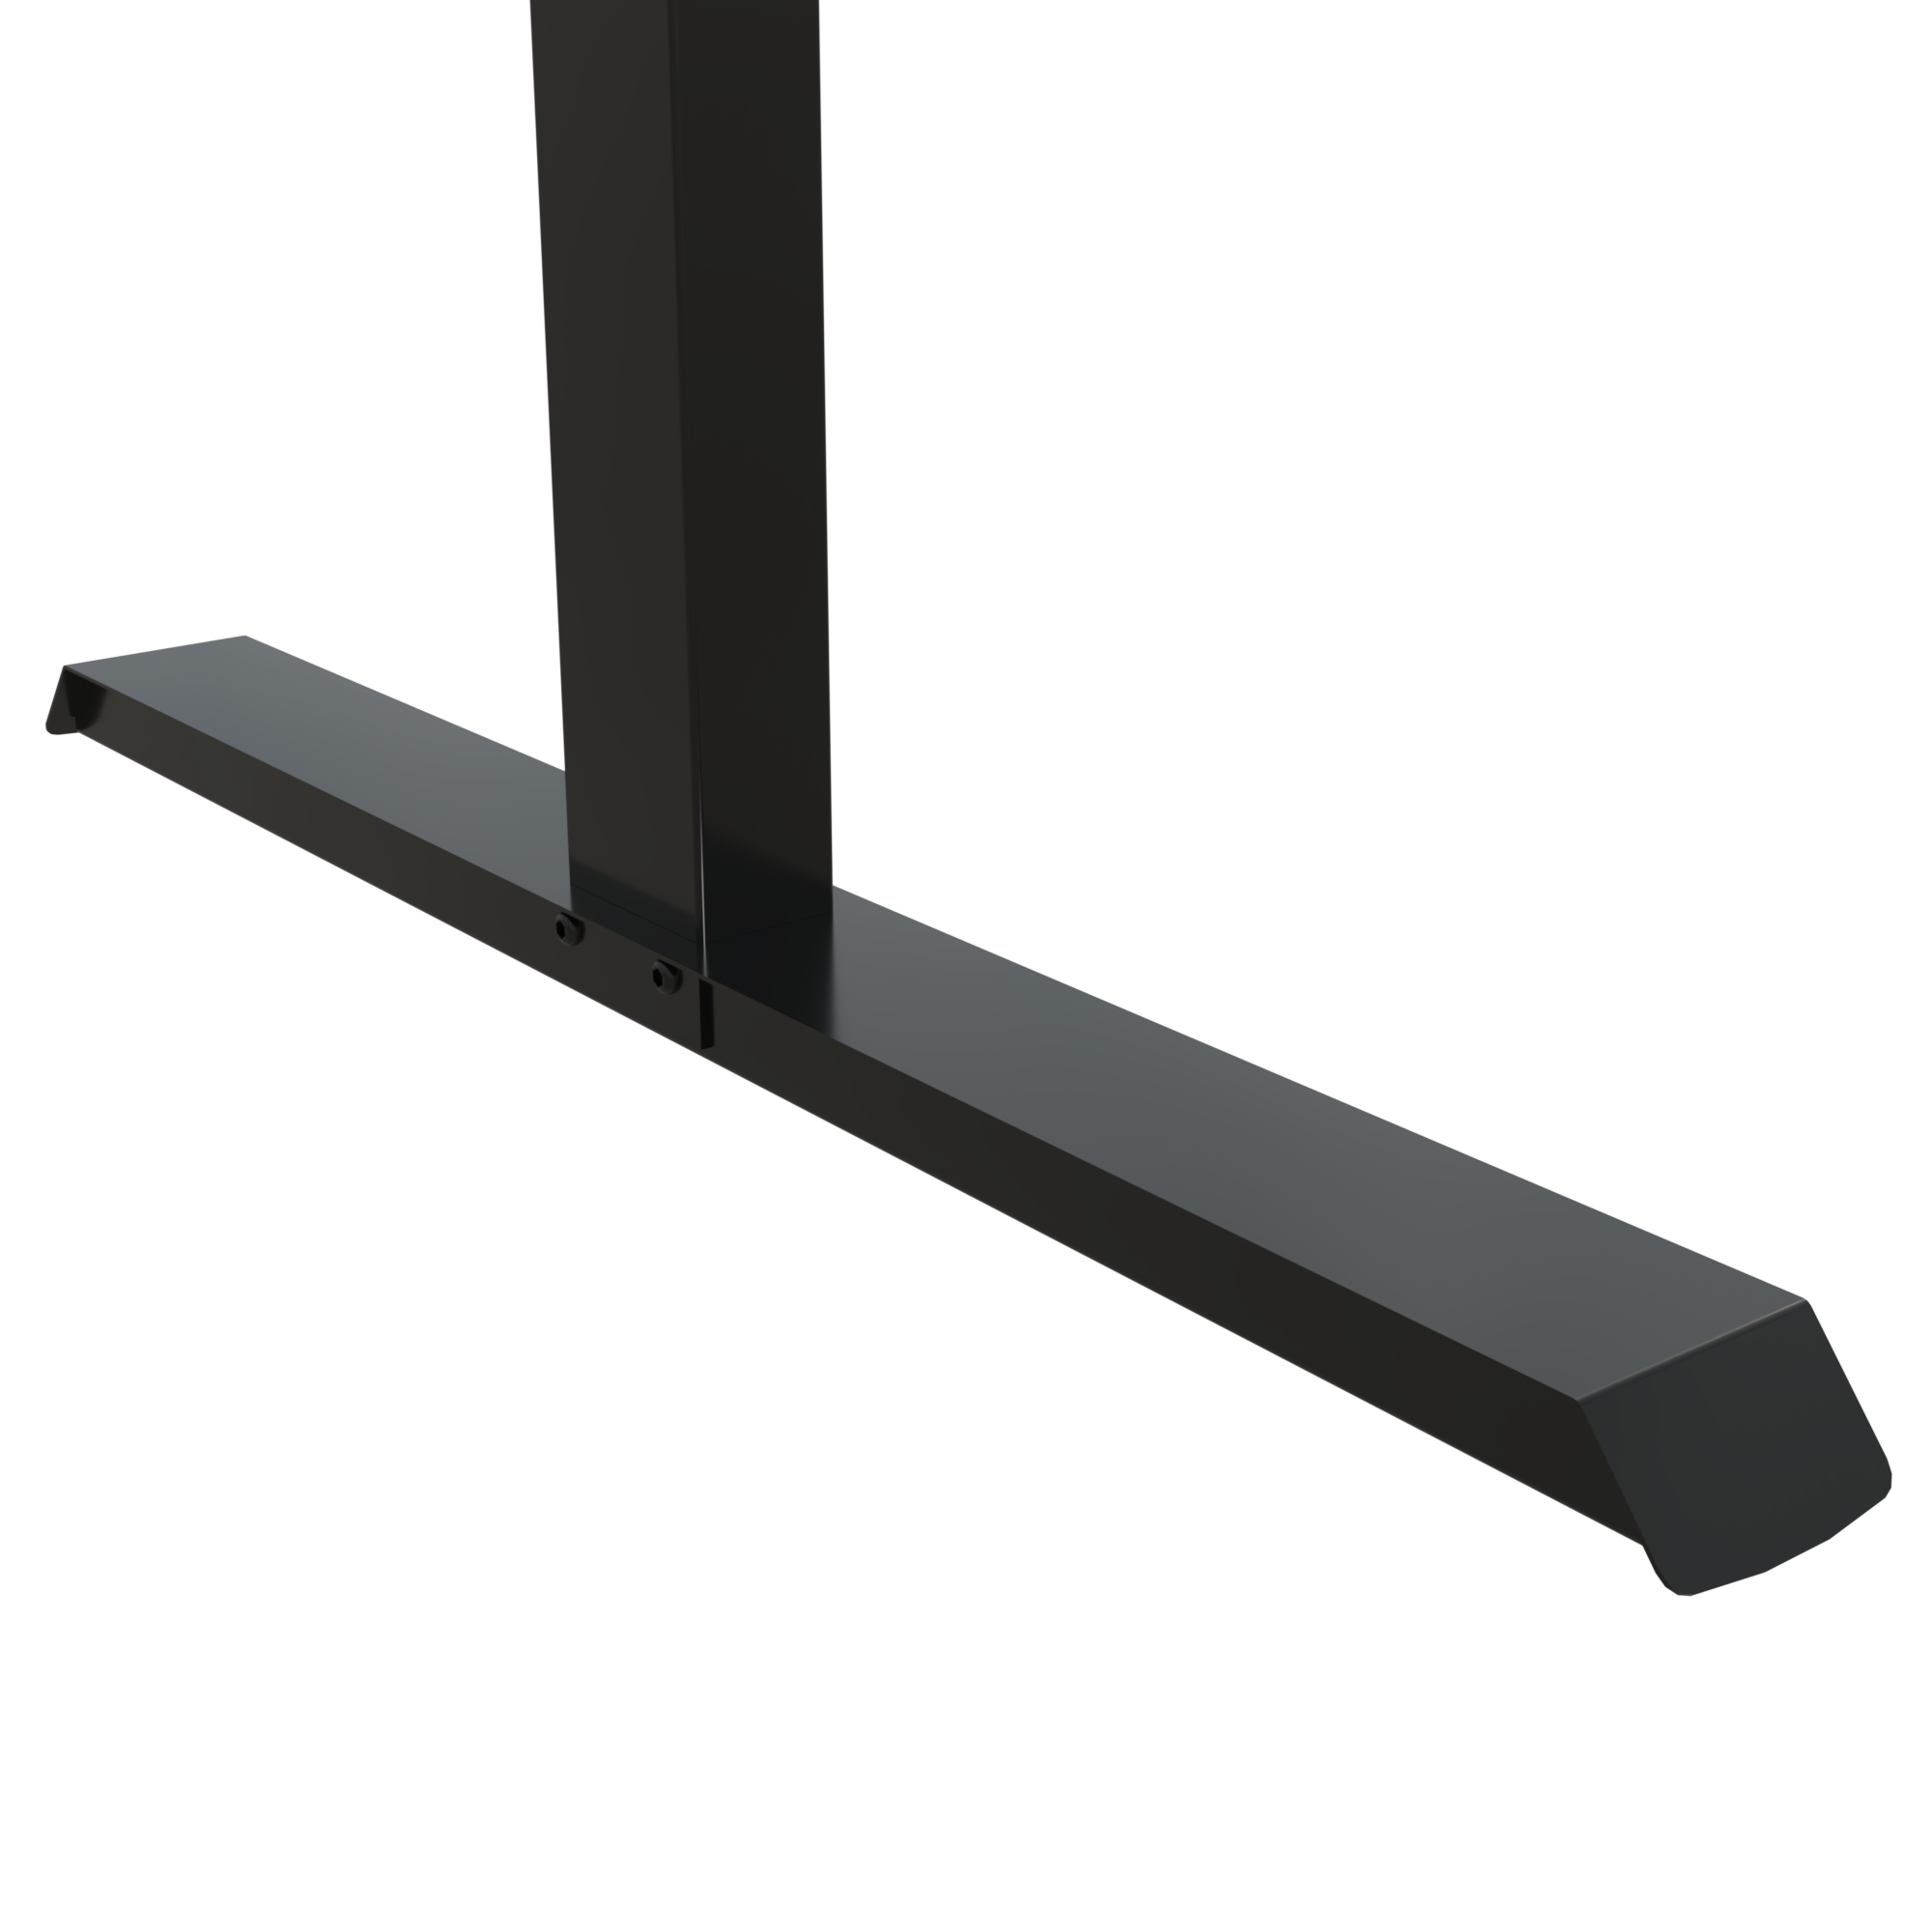 Schreibtisch steh/sitz | 120x80 cm | Buche mit schwarzem Gestell